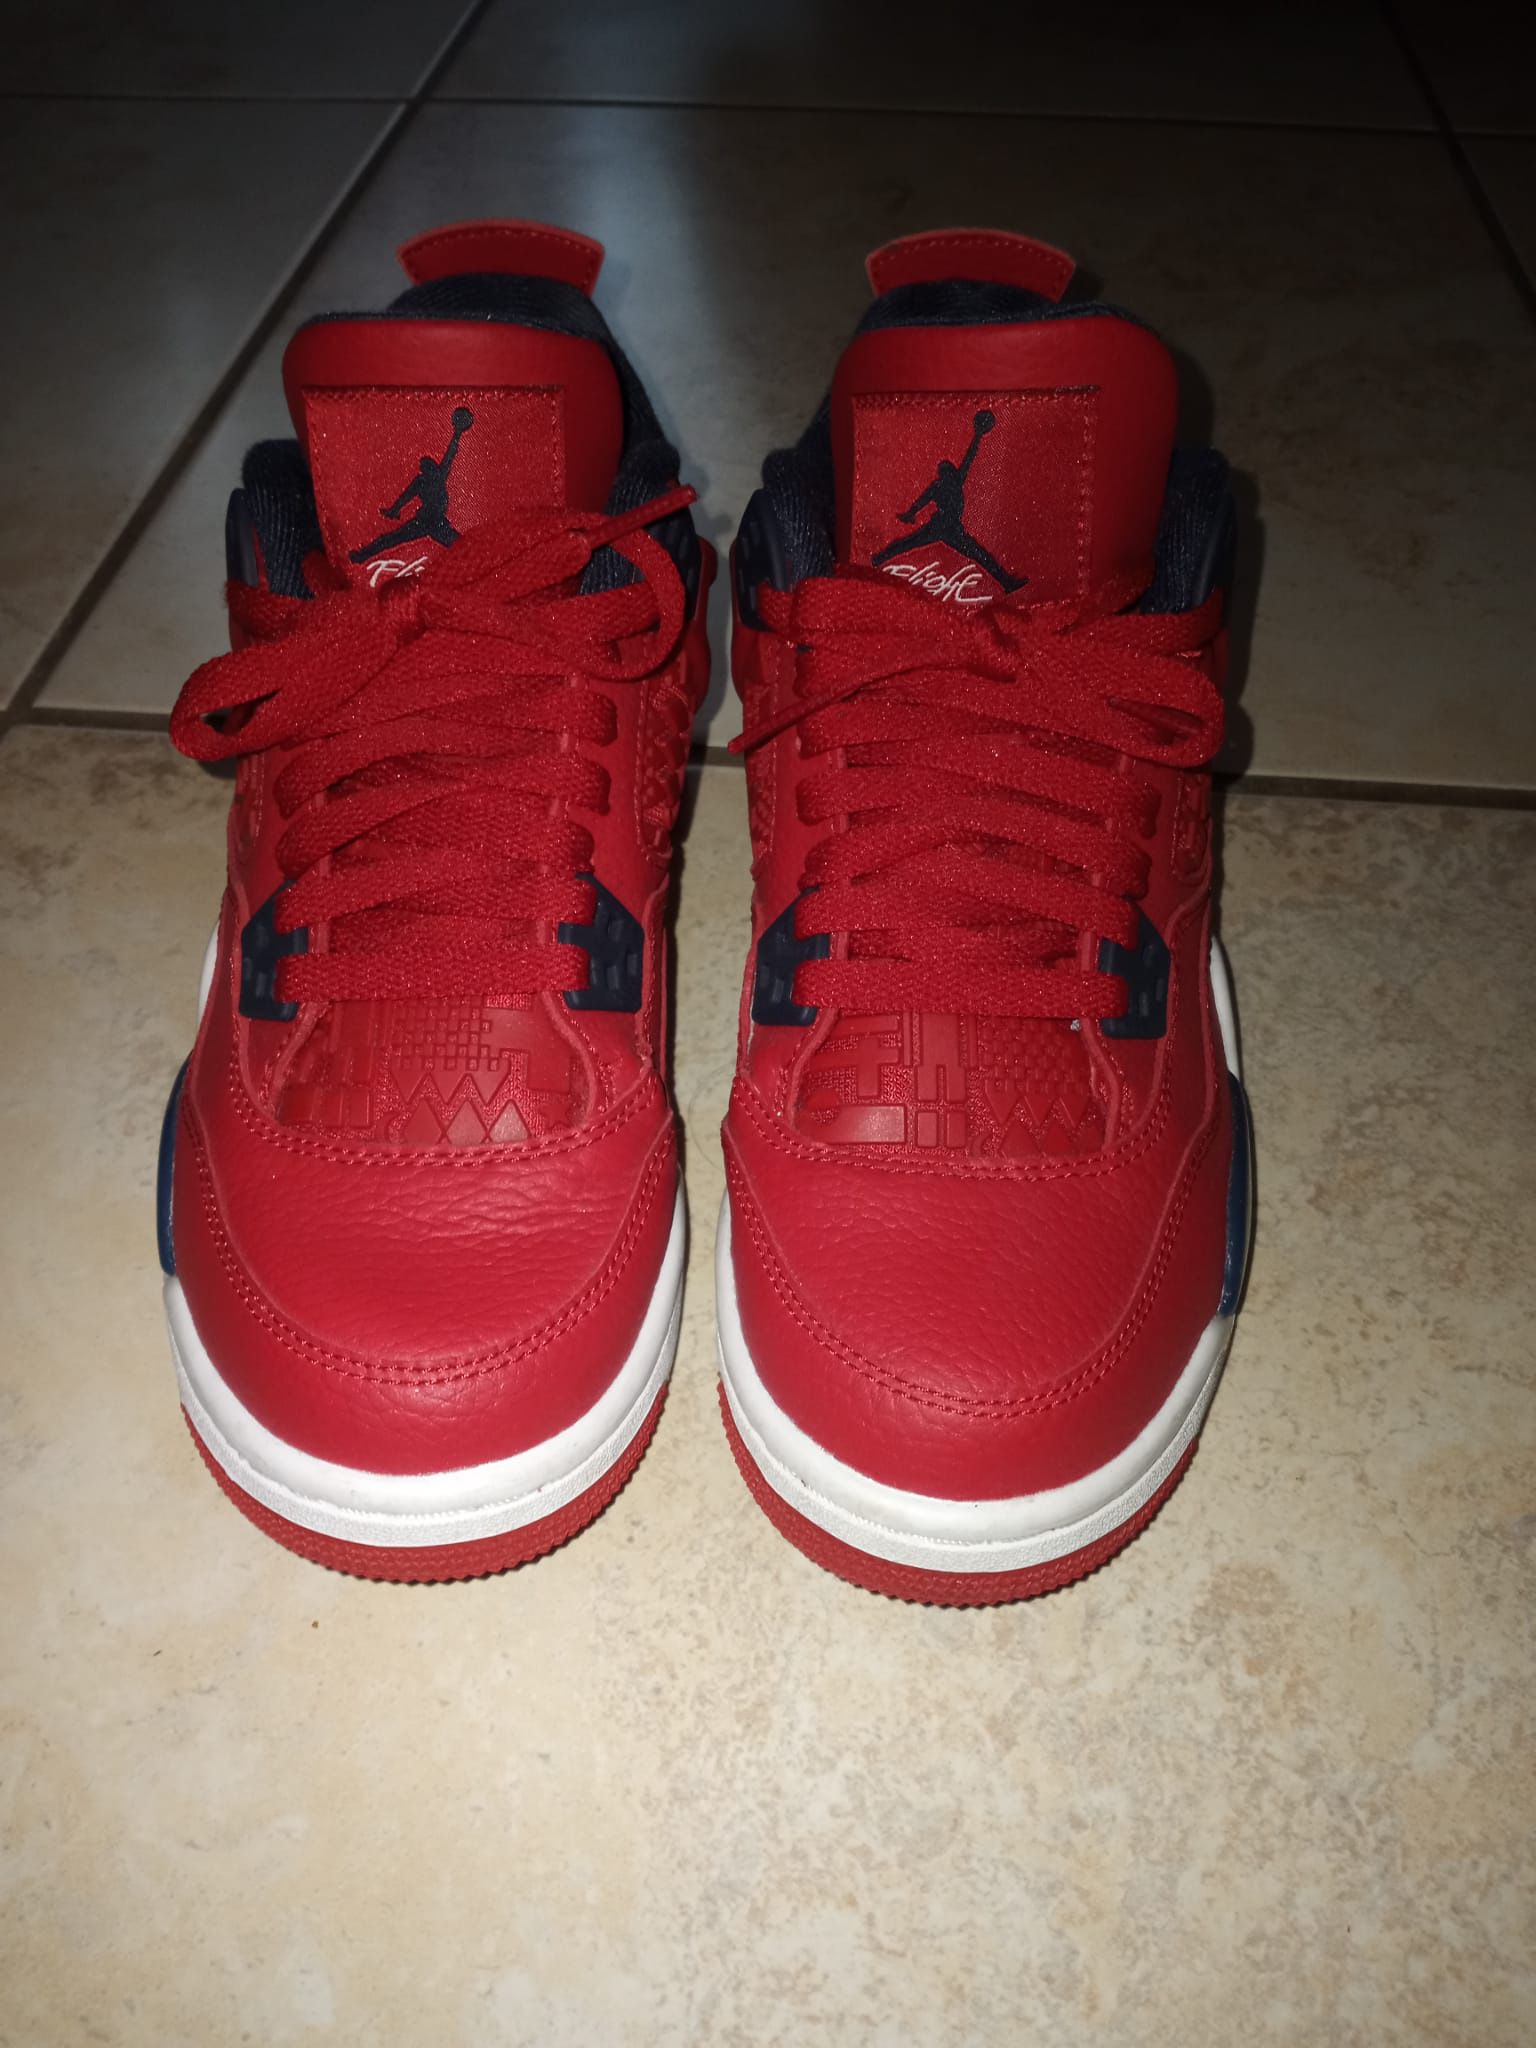 Jordans 4 Retro/ Size 5.5